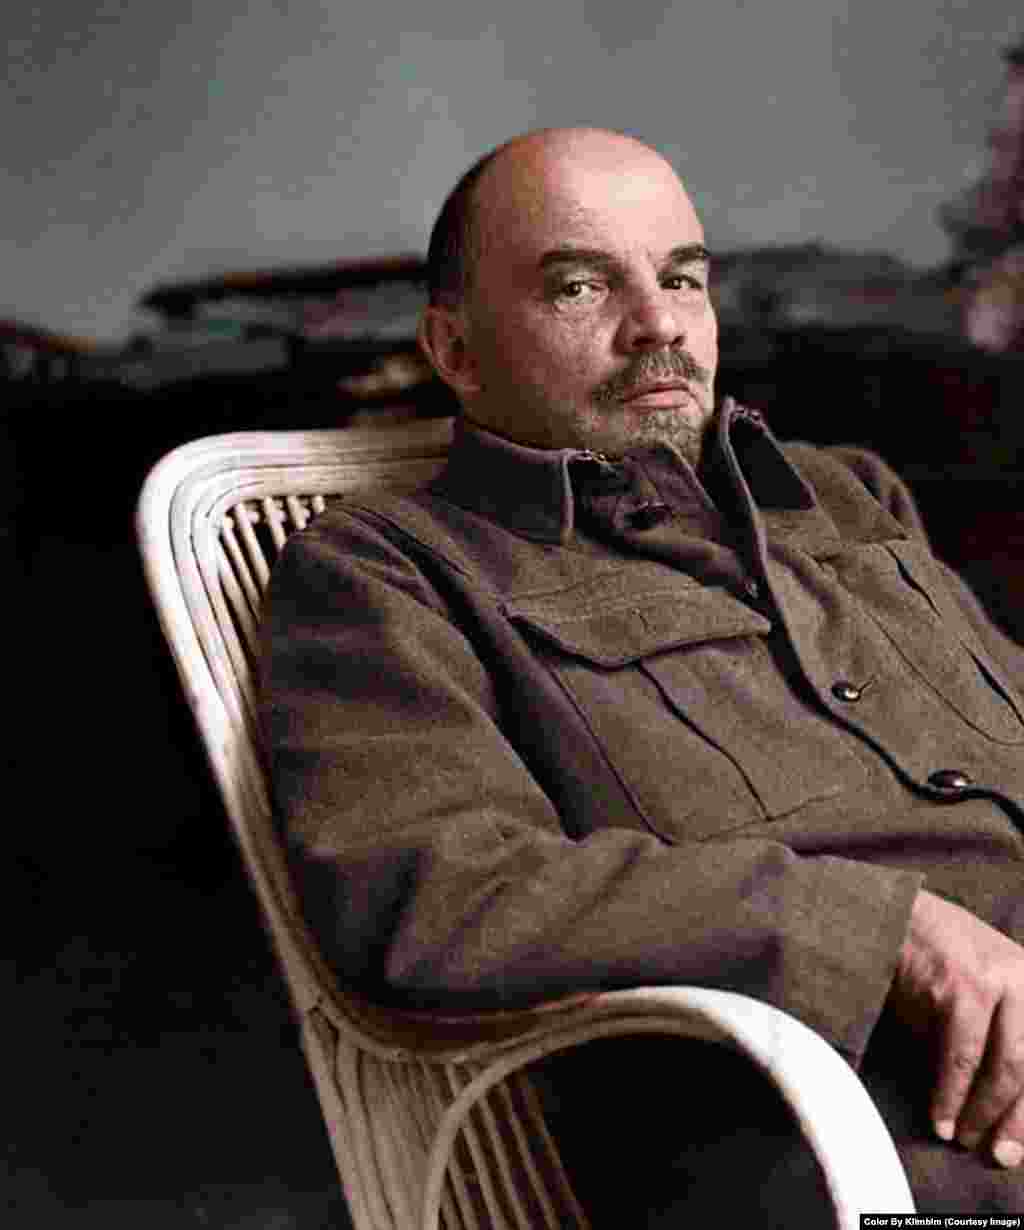 Глядя на эту фотографию, можно даже услышать скрип плетеного кресла, в котором сидит Ленин